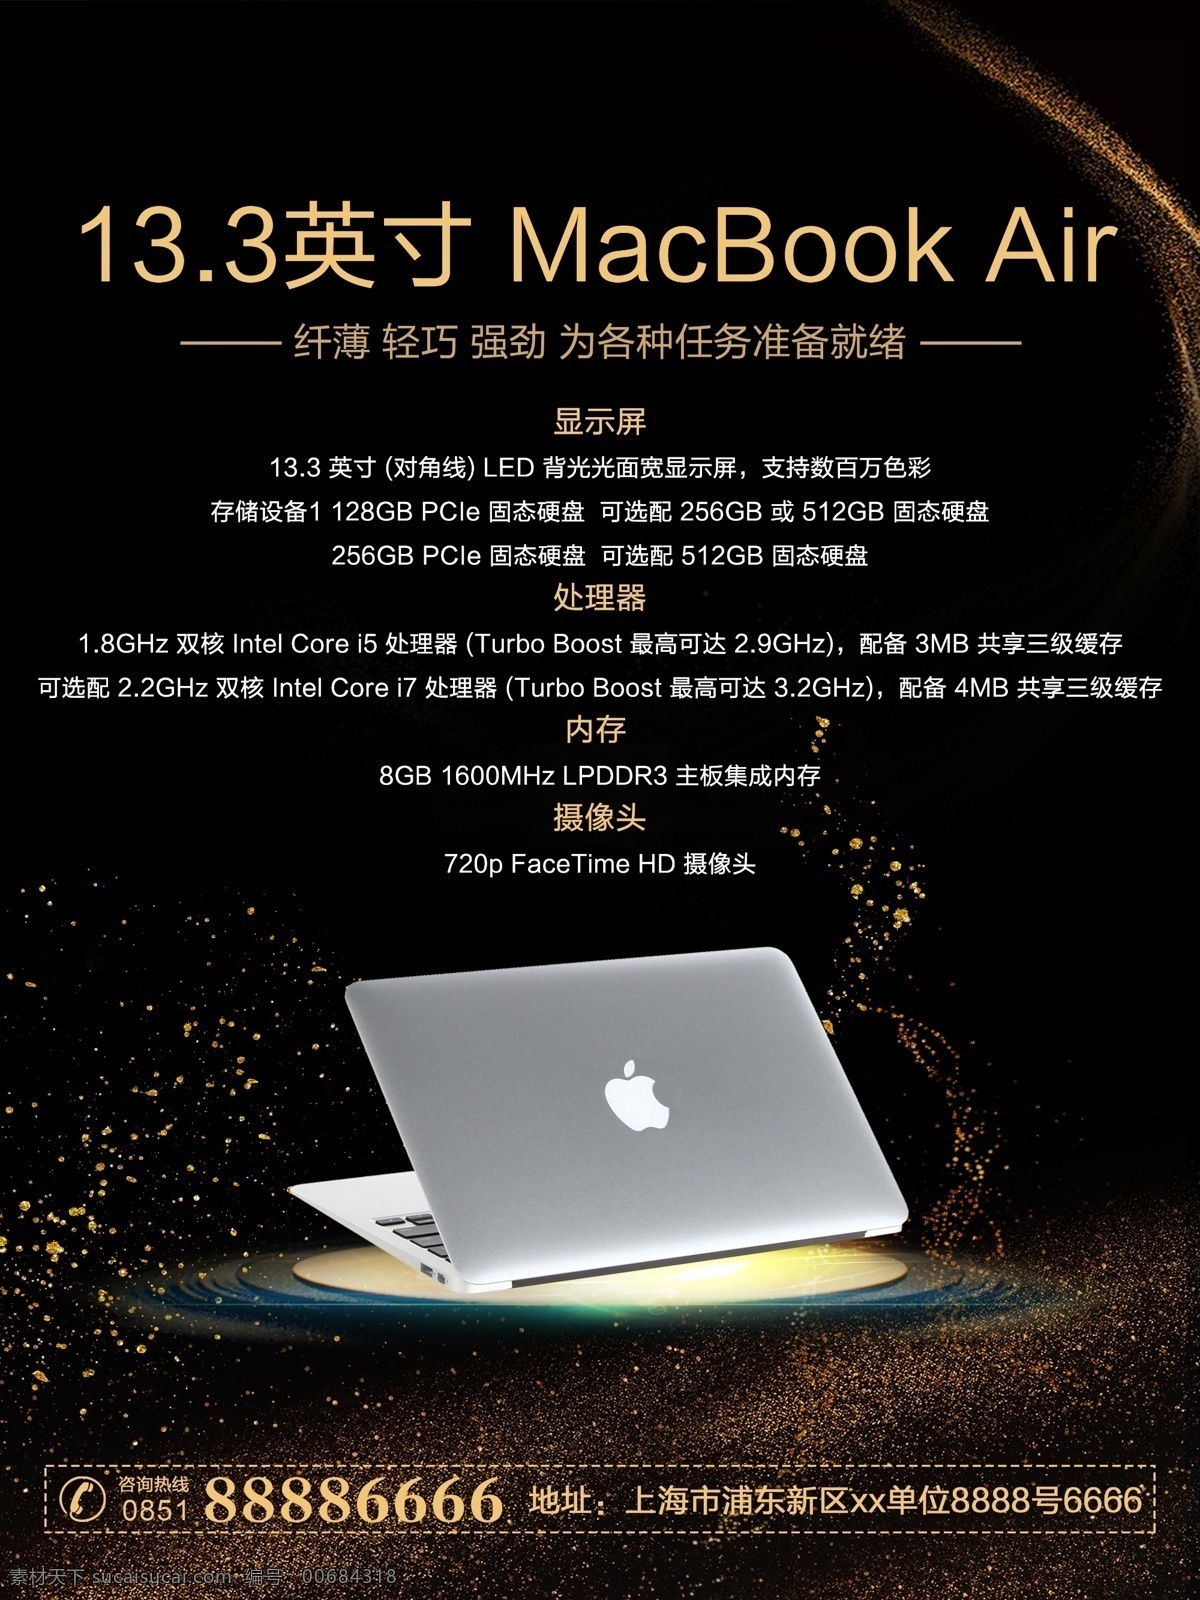 苹果 产品 macbookair 促销 海报 苹果平板 苹果电脑 一体机 现代科技 唯美 数码产品 高科技 震撼 macbookpro 笔记本 全新体验